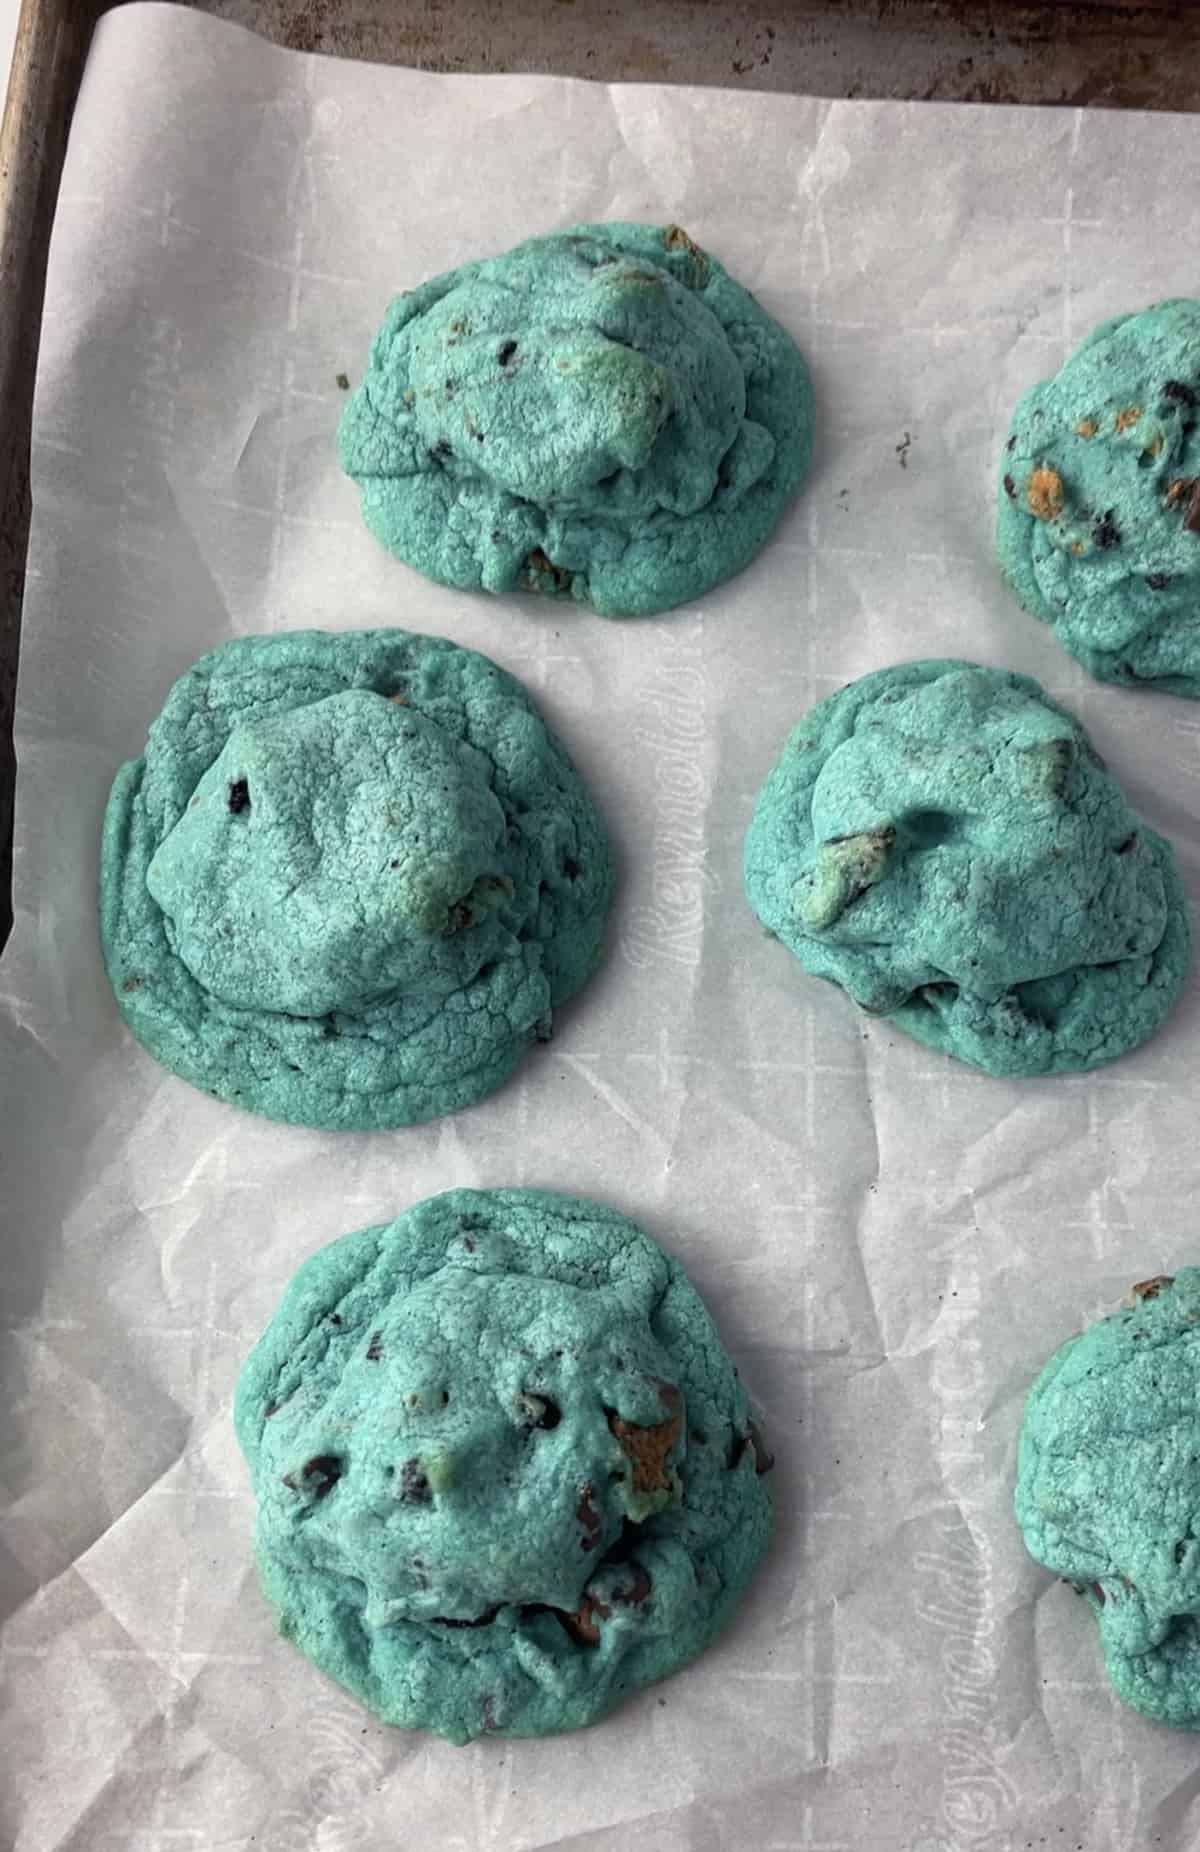 Baked cookie monster cookies.